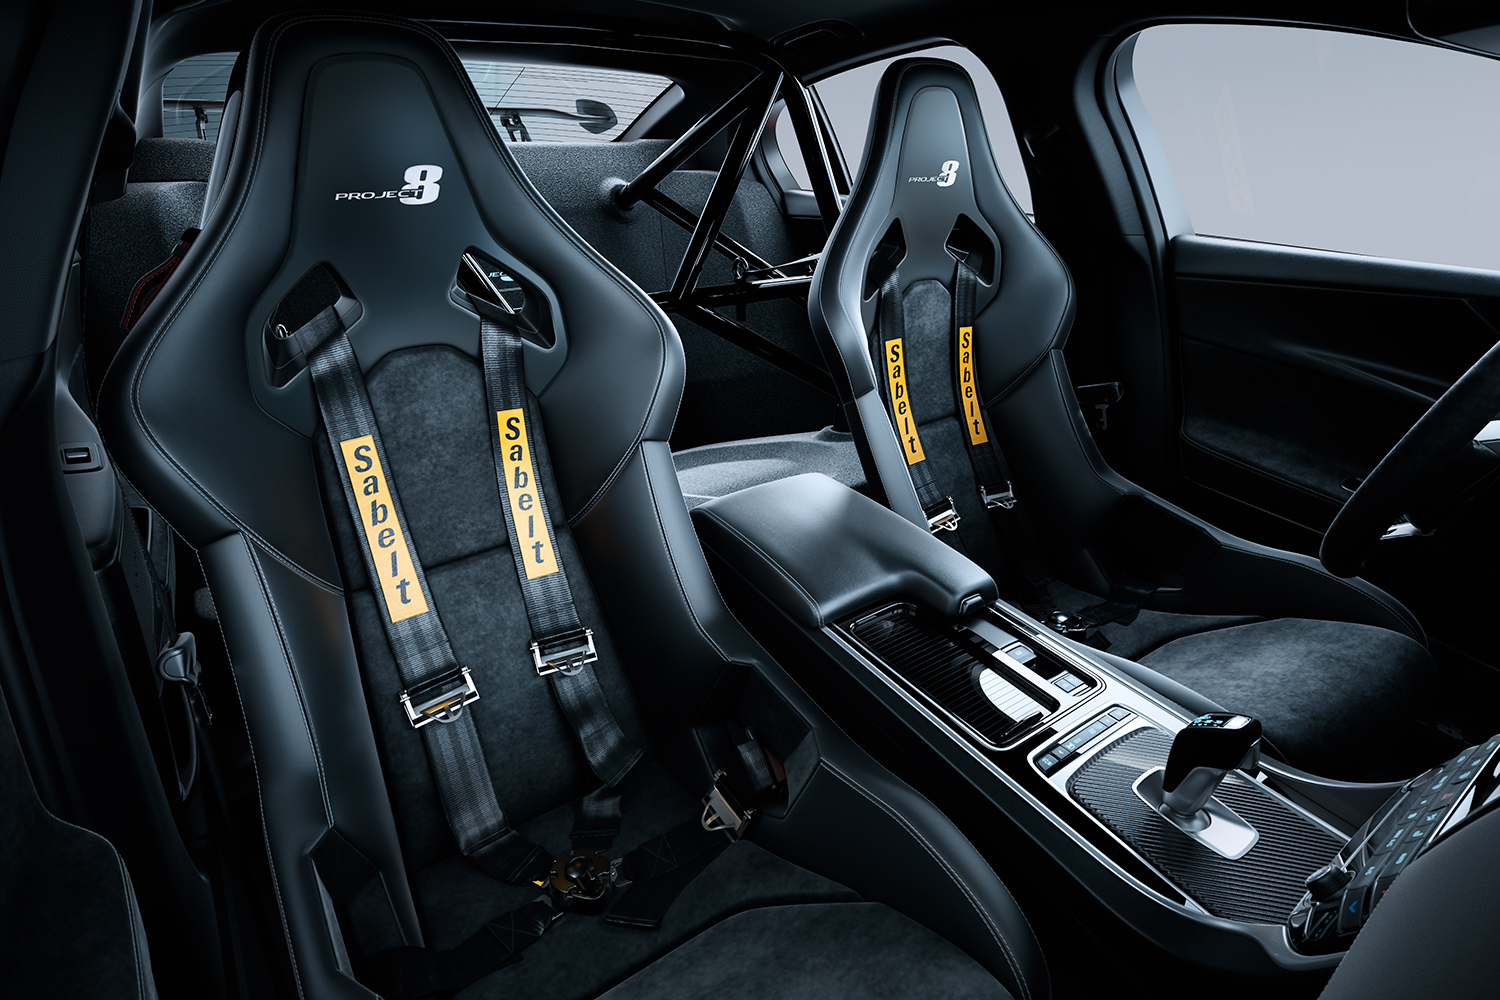 Jaguar-XE-SV-Project 8 interior no race